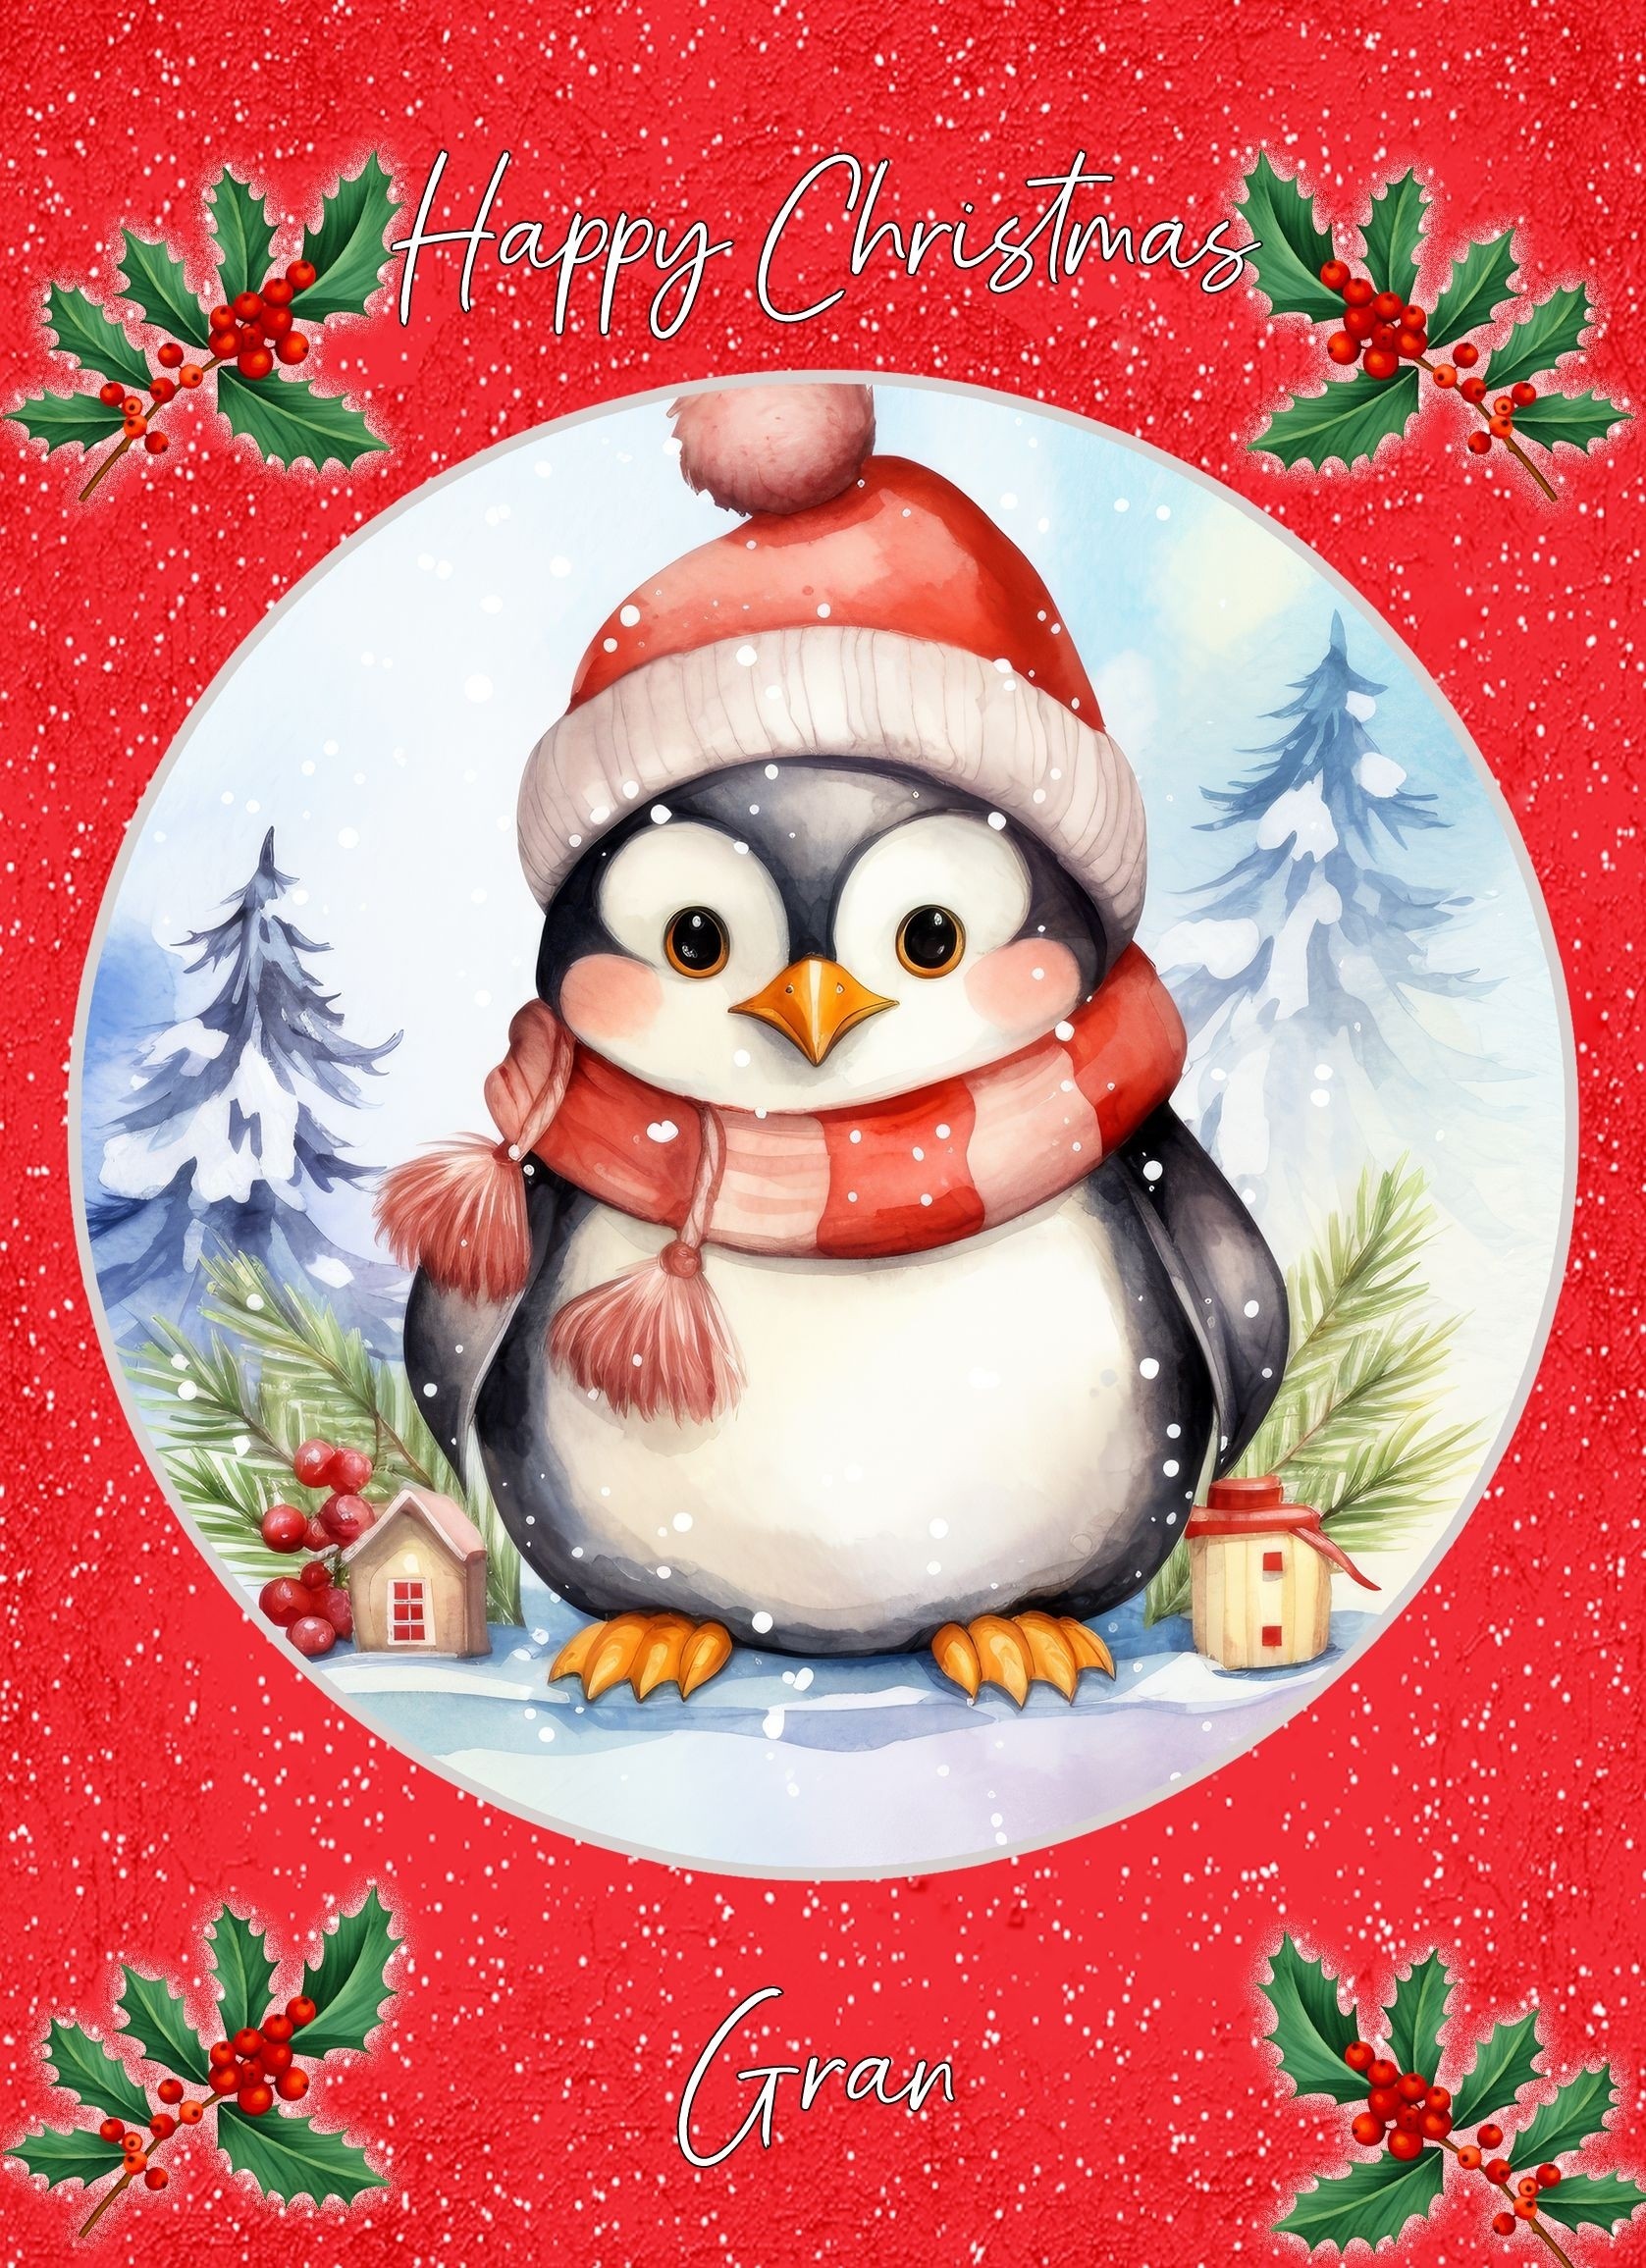 Christmas Card For Gran (Globe, Penguin)